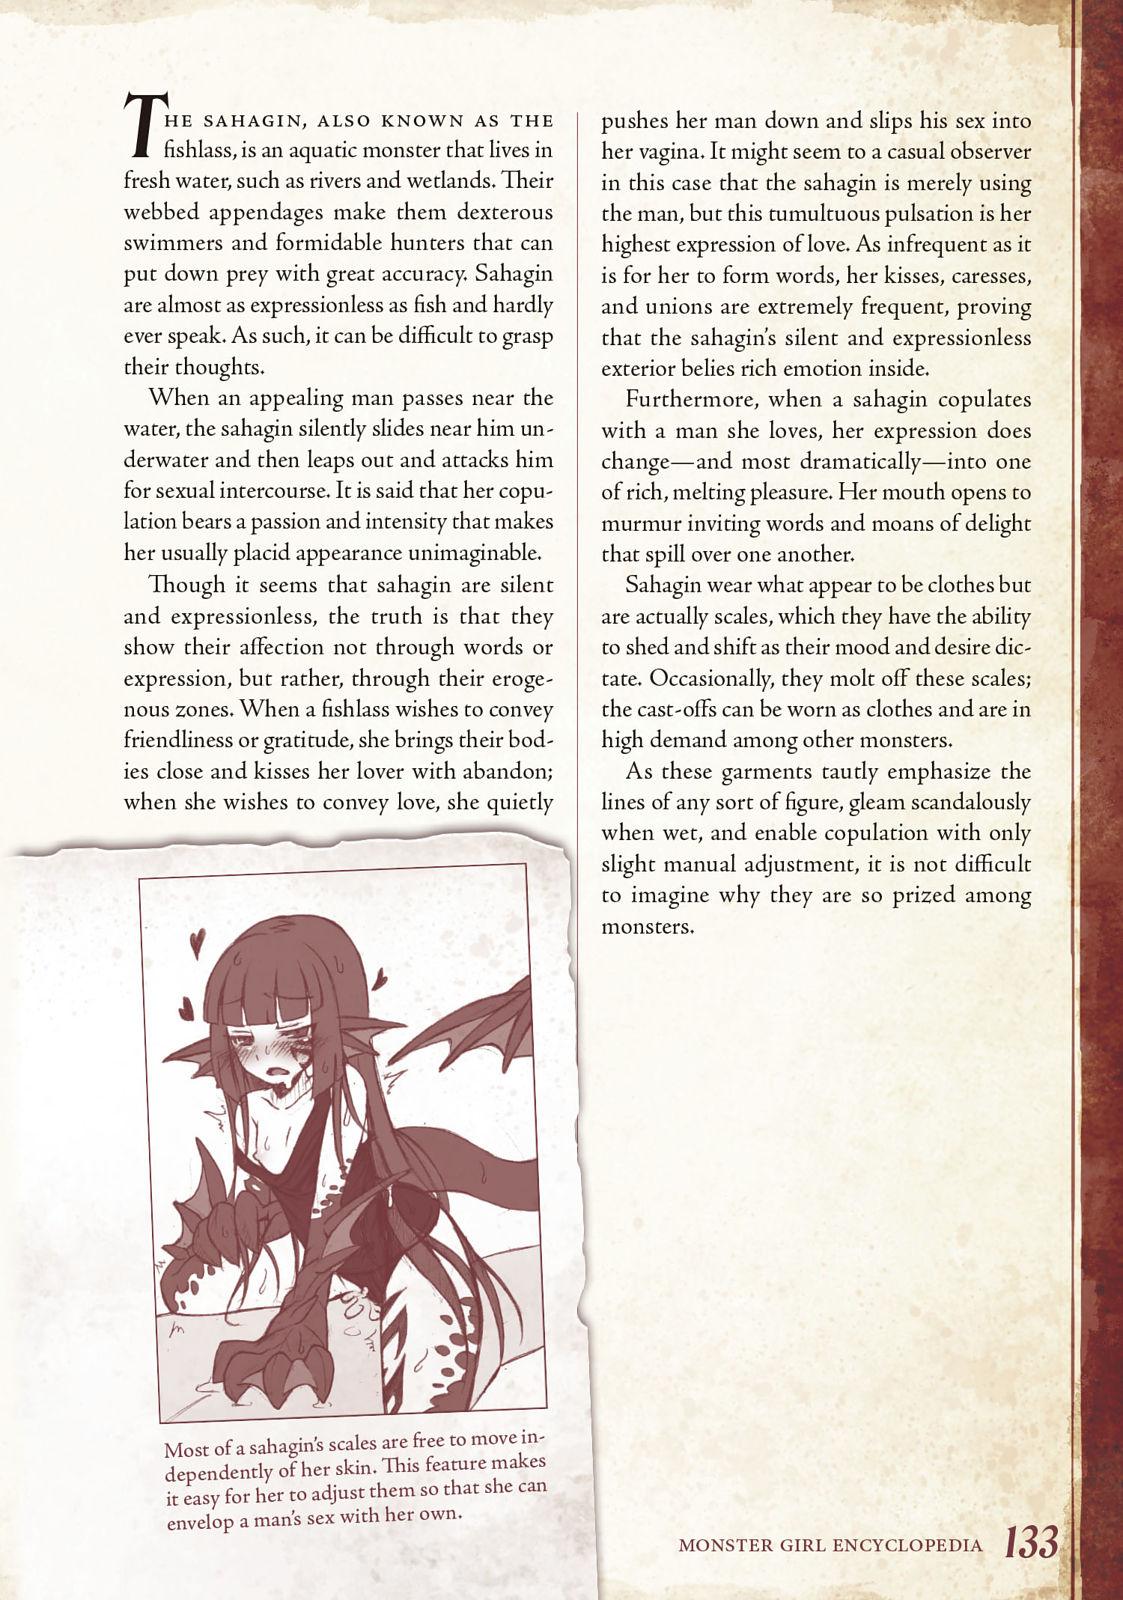 Monster Girl Encyclopedia Vol. 1 133